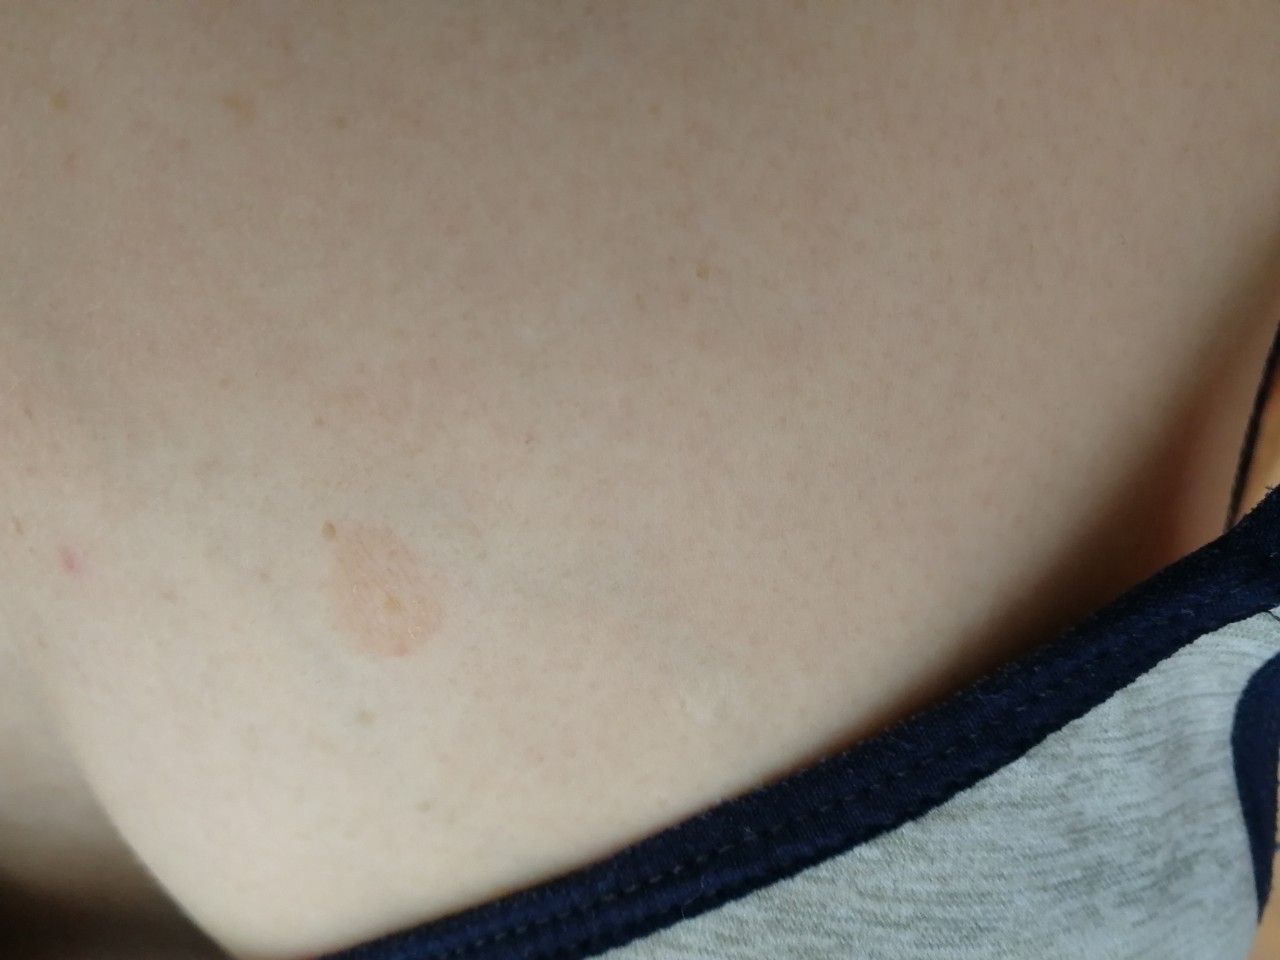 красная сыпь на груди во время беременности фото 50